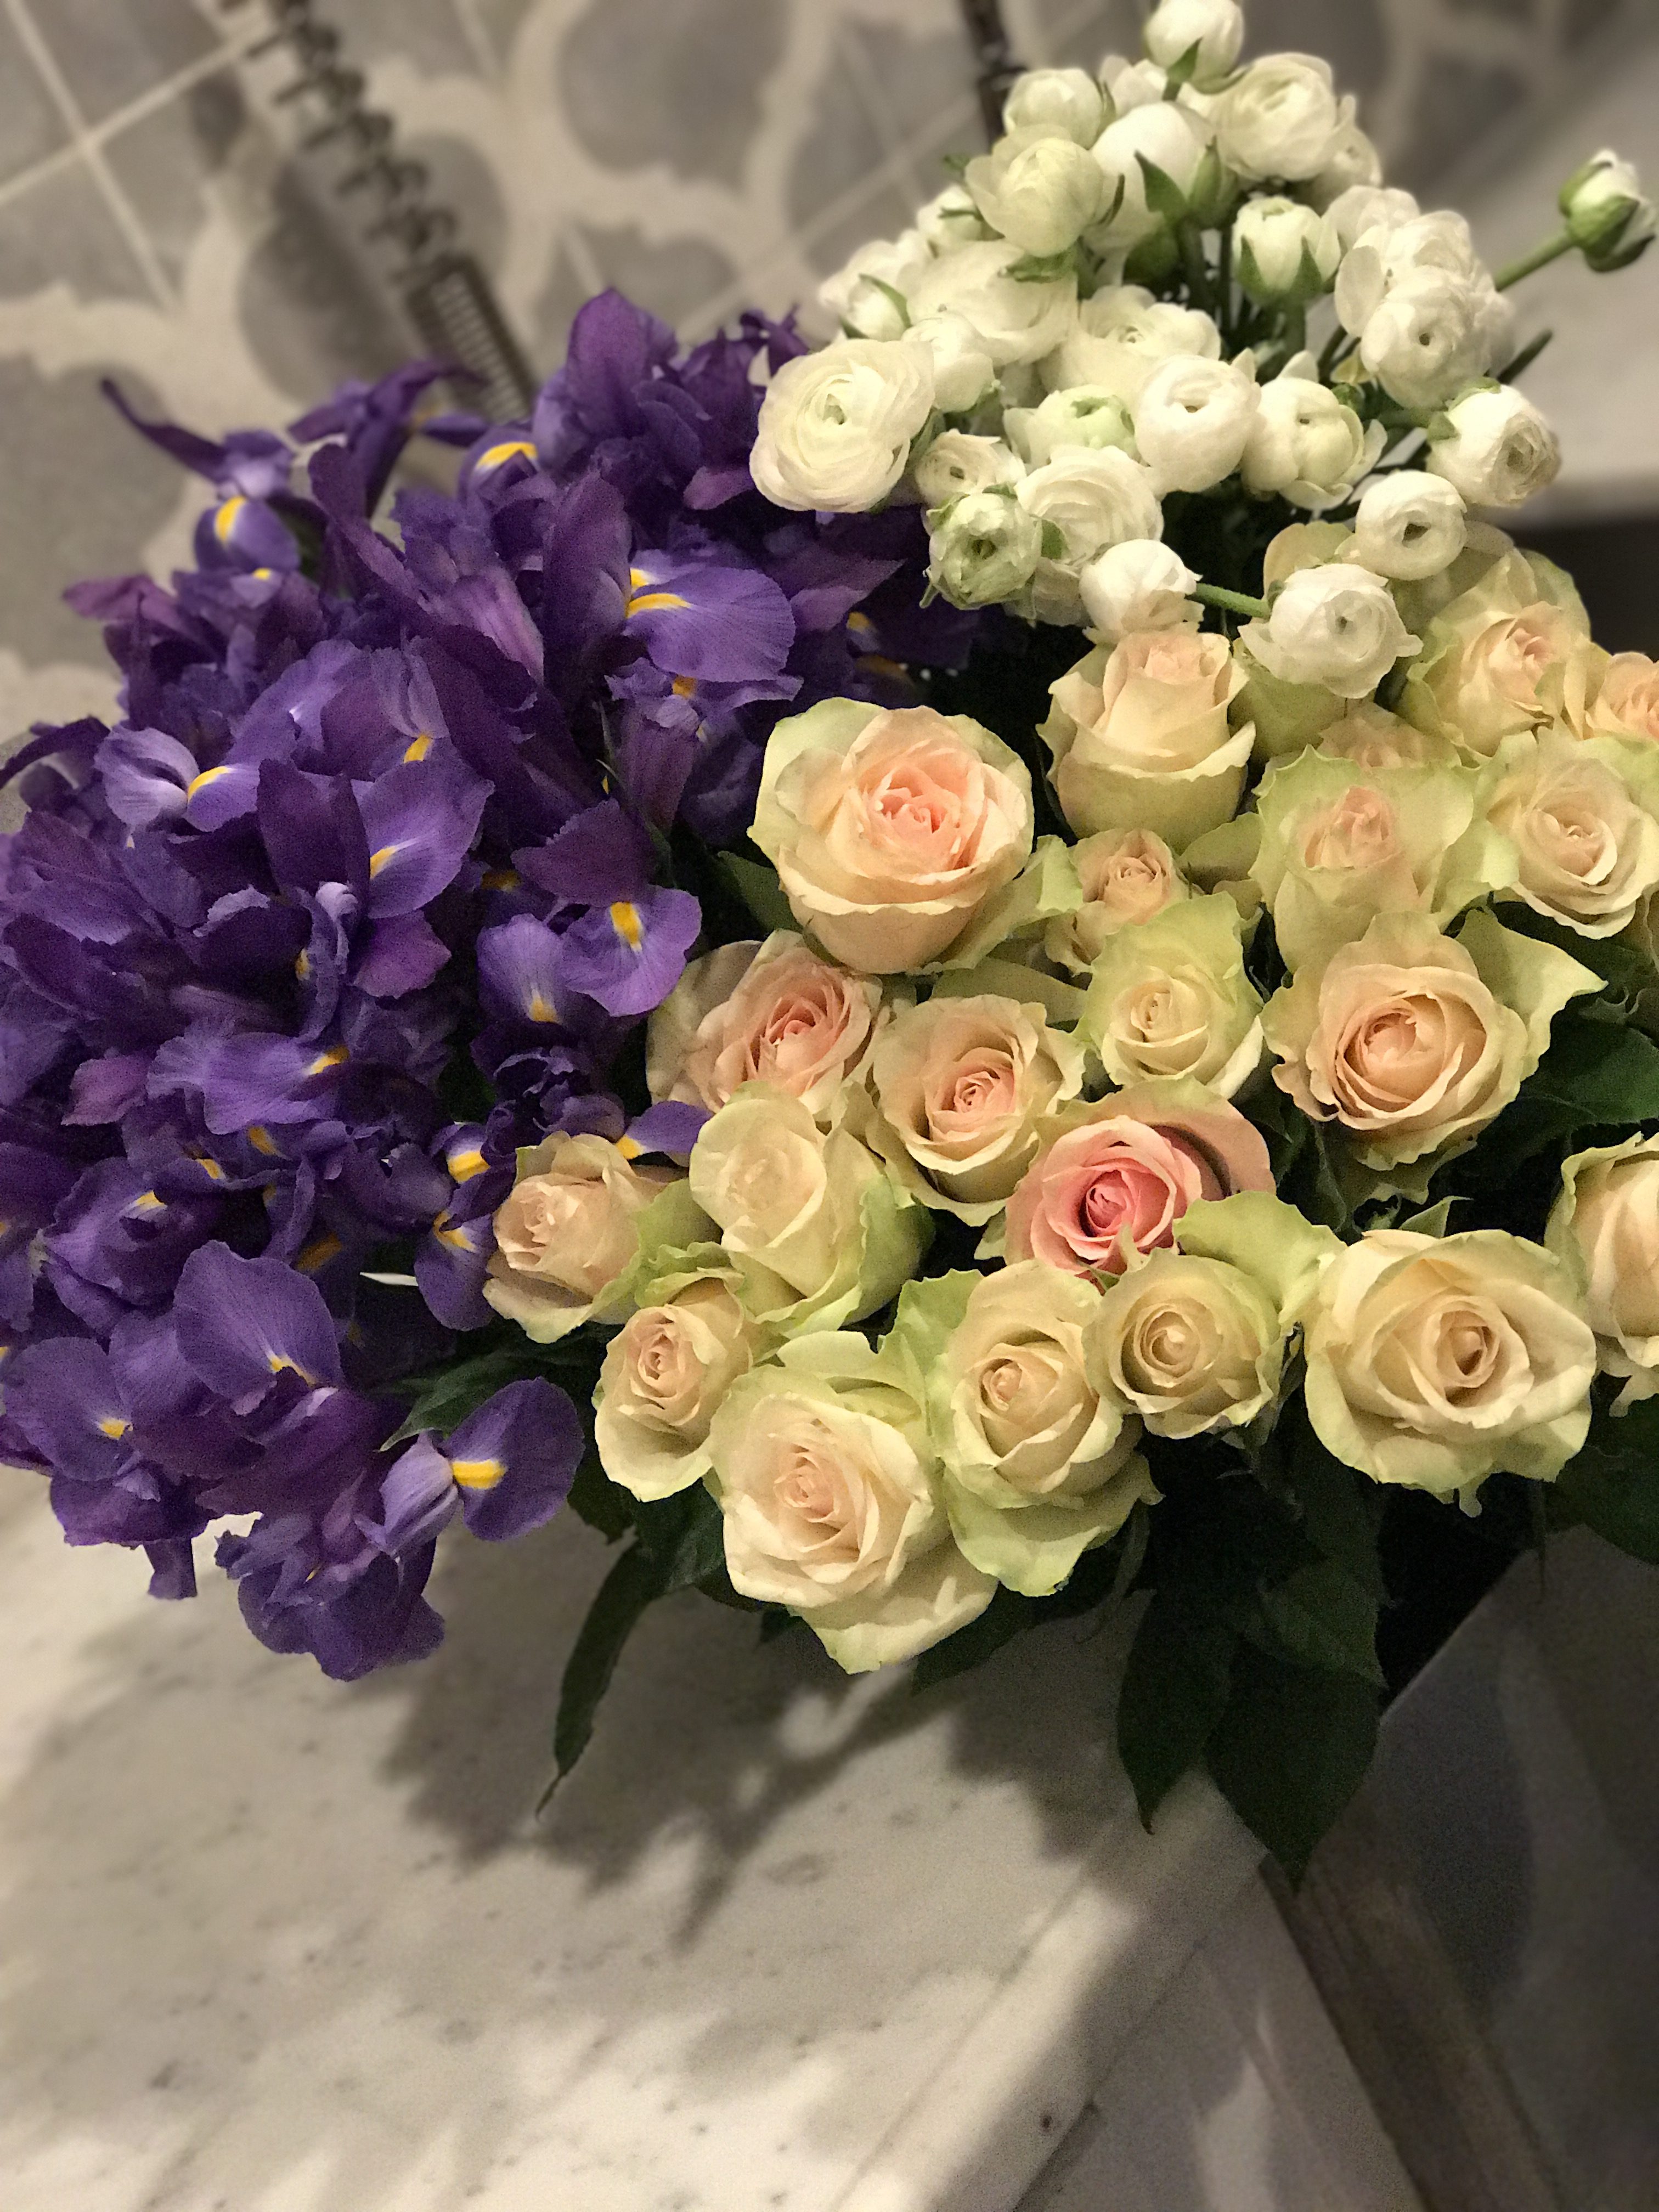 Floral Arranging: My 7 Best Flower Hacks